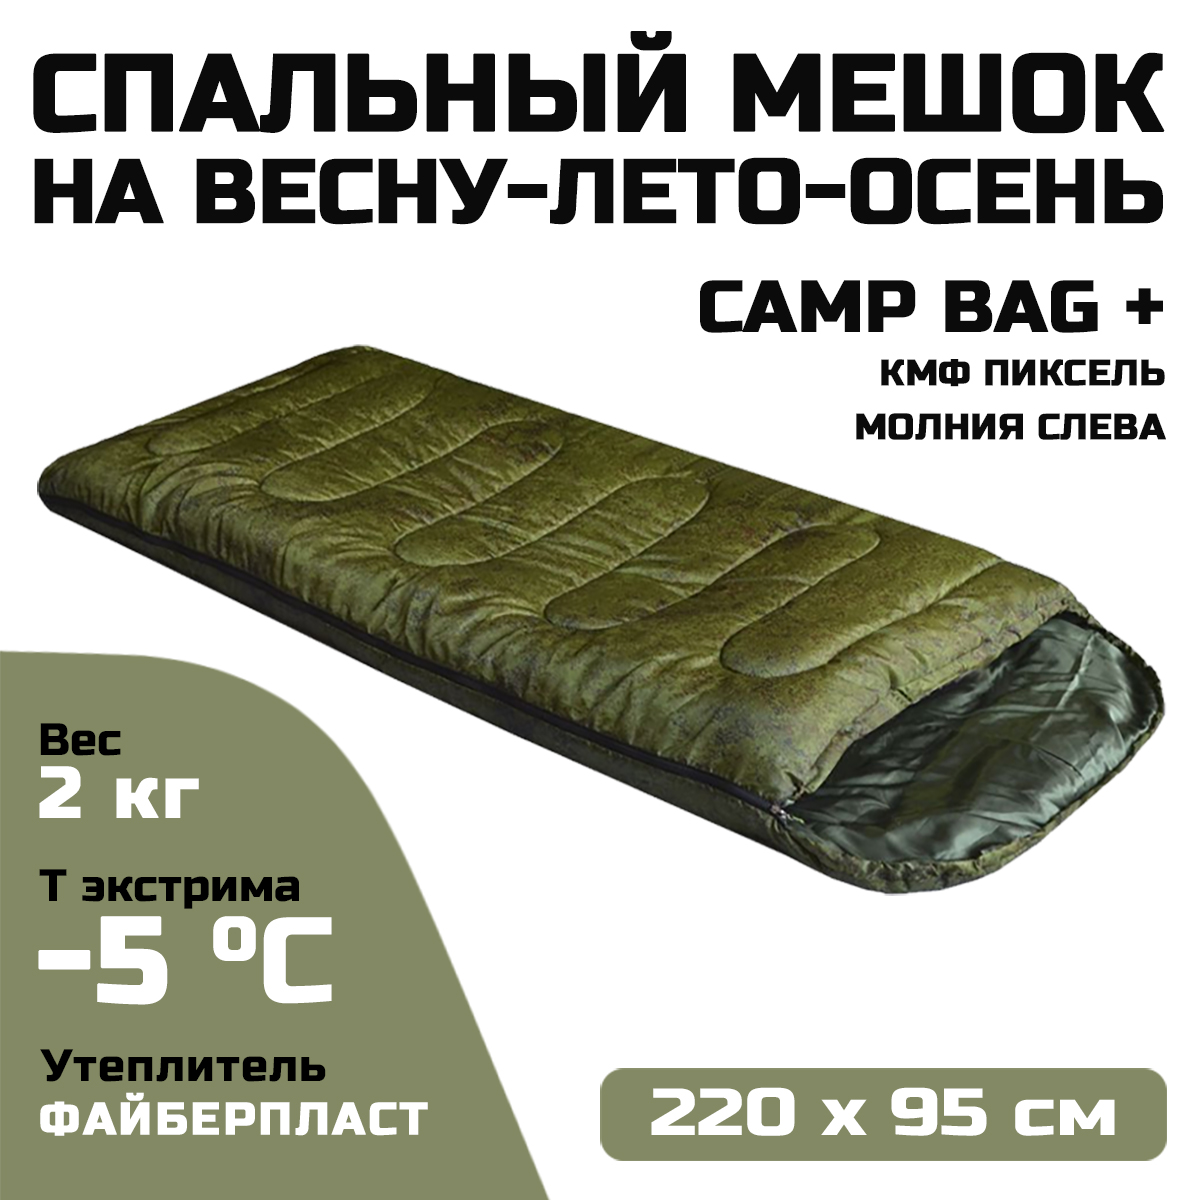 Спальный мешок Prival Сamp bag плюс, до -5°С, 220х95см, кмф Pixel, молния слева